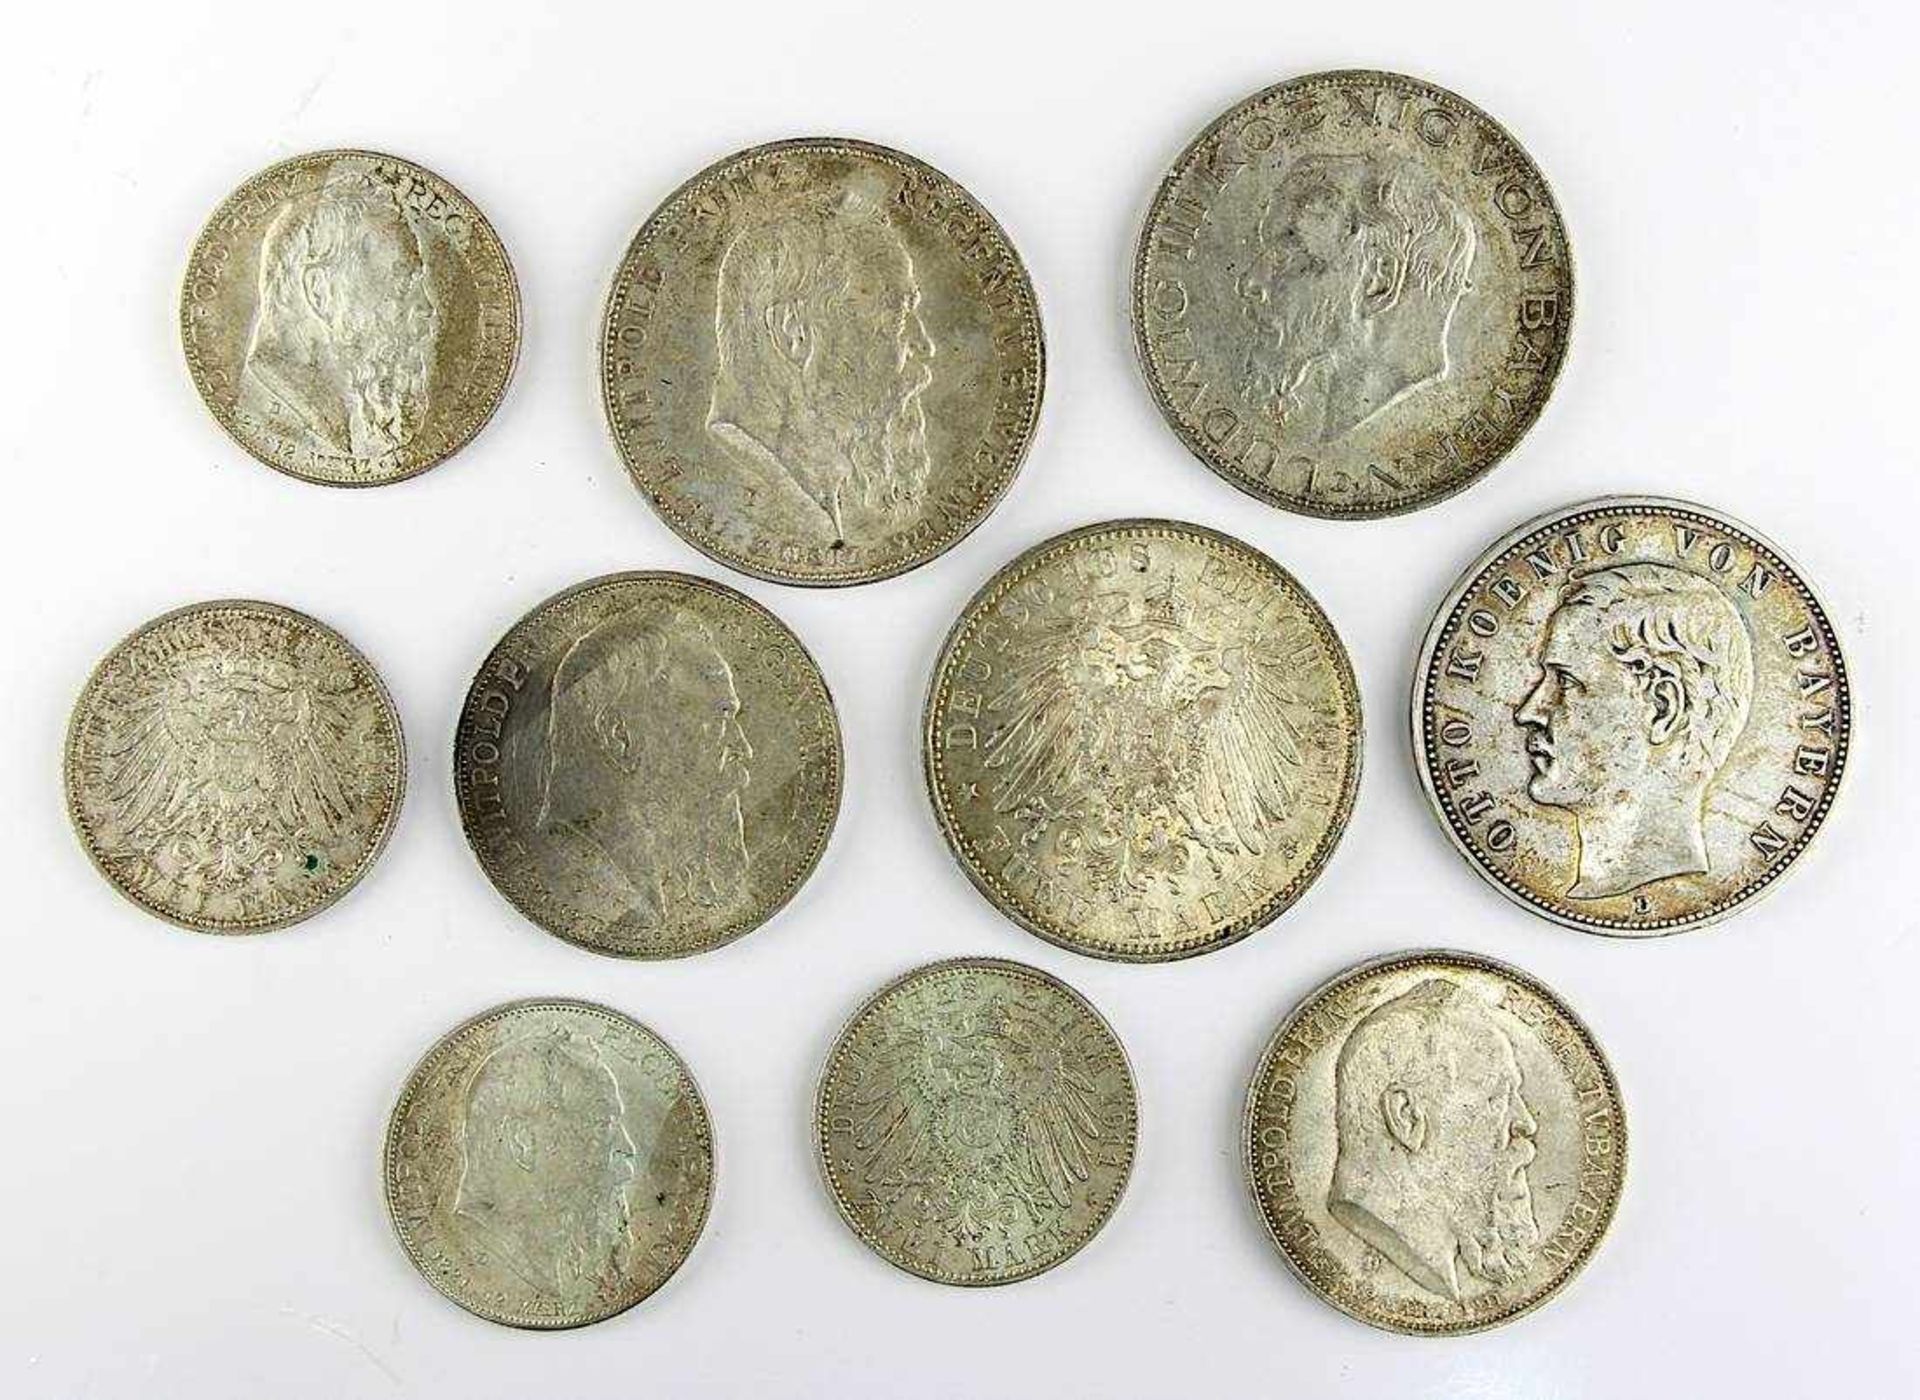 10 Silbermünzen Deutsches Reich, Königreich Bayern 1904-1914: 4 Stücke zu 5 Mark Otto Koenig von